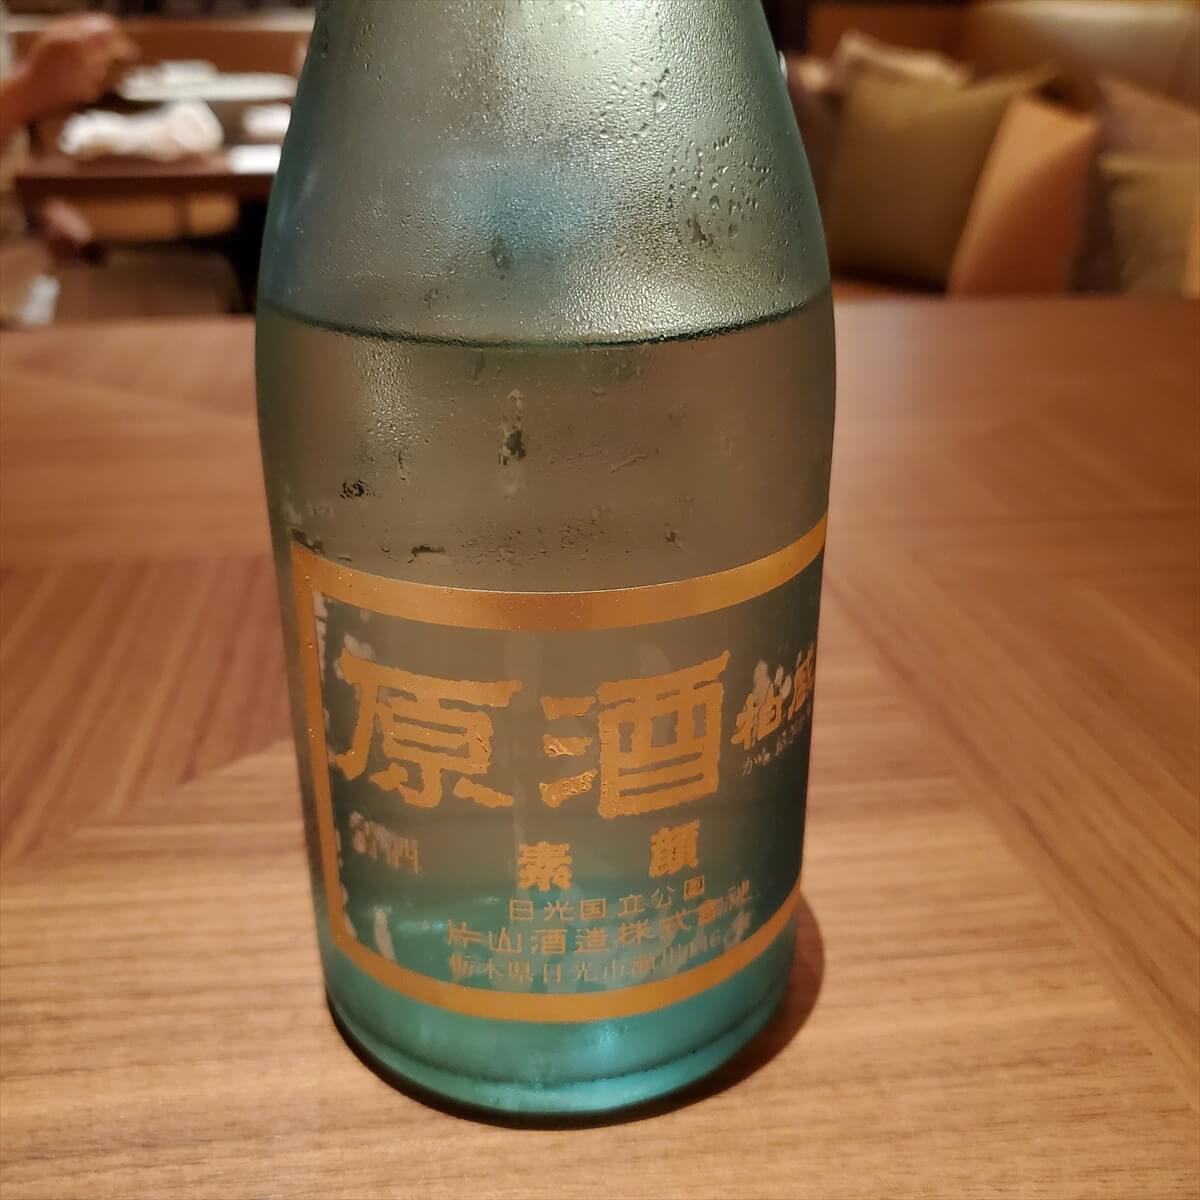 リッツカールトン日光のディナーの日本酒の日光の地酒「柏盛素顔無濾過生原酒」